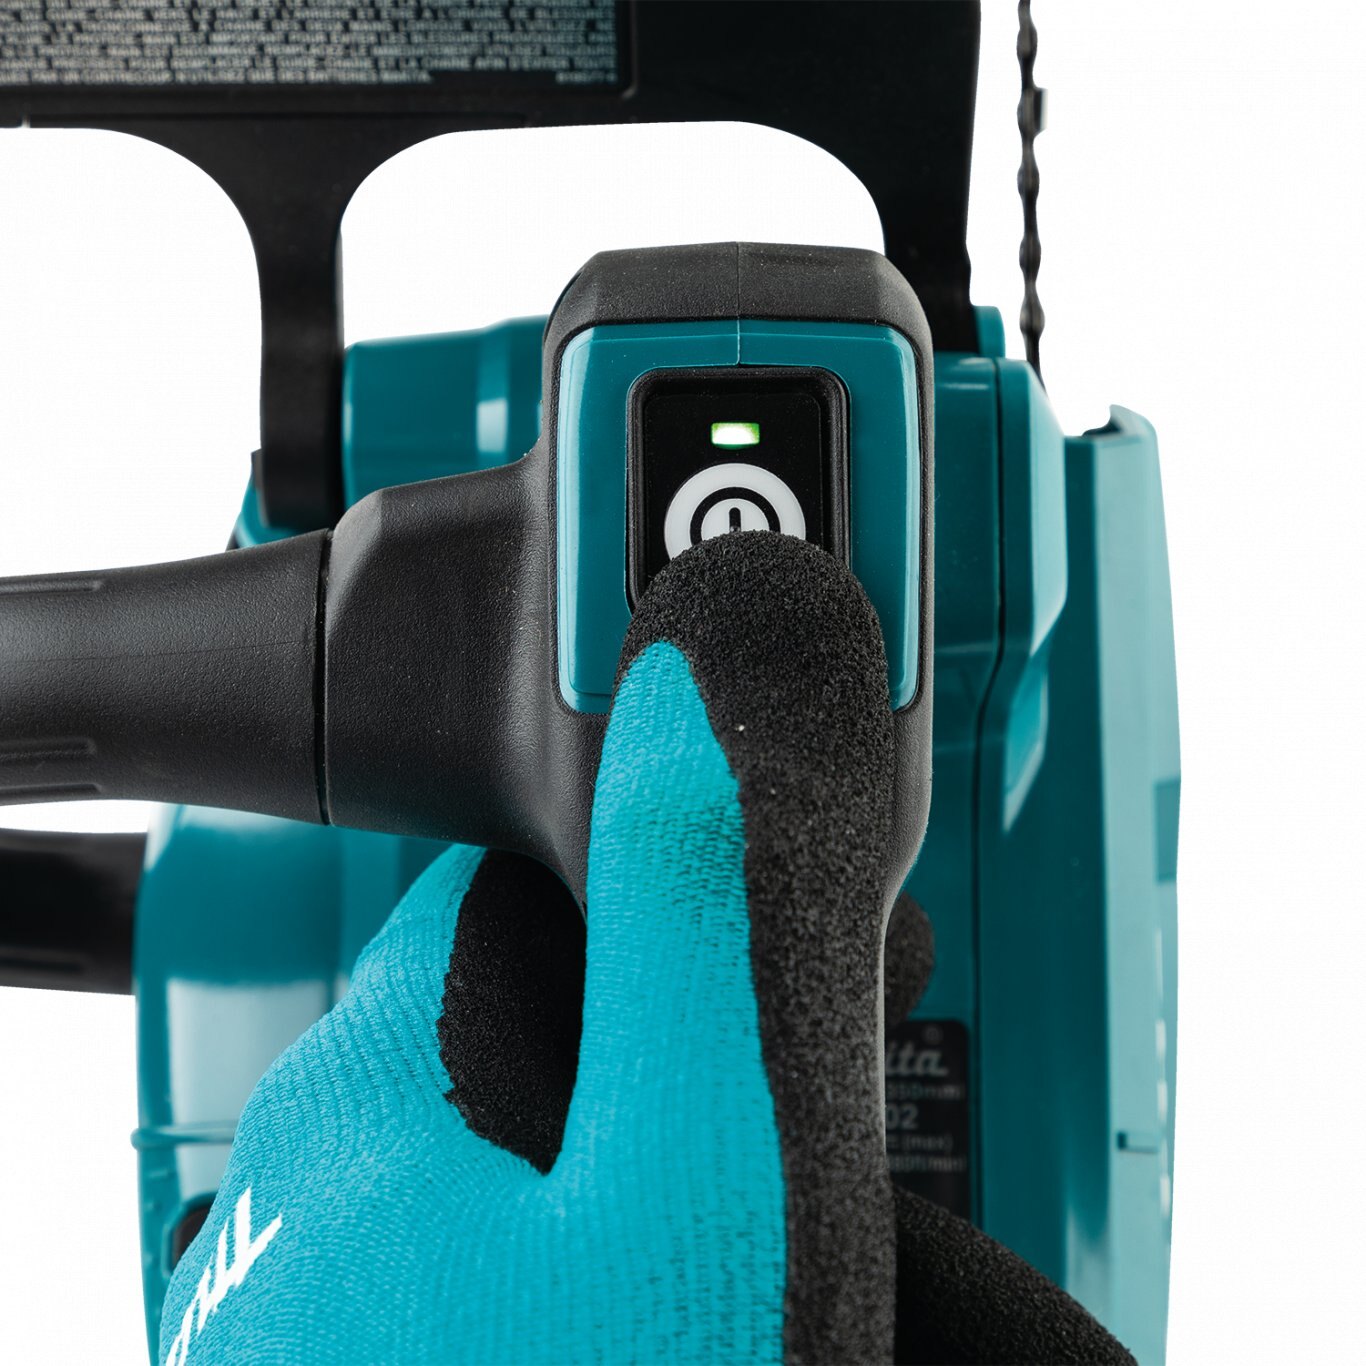 Makita 40V max XGT® Brushless Cordless 14 Top Handle Chain Saw Kit (4.0Ah)